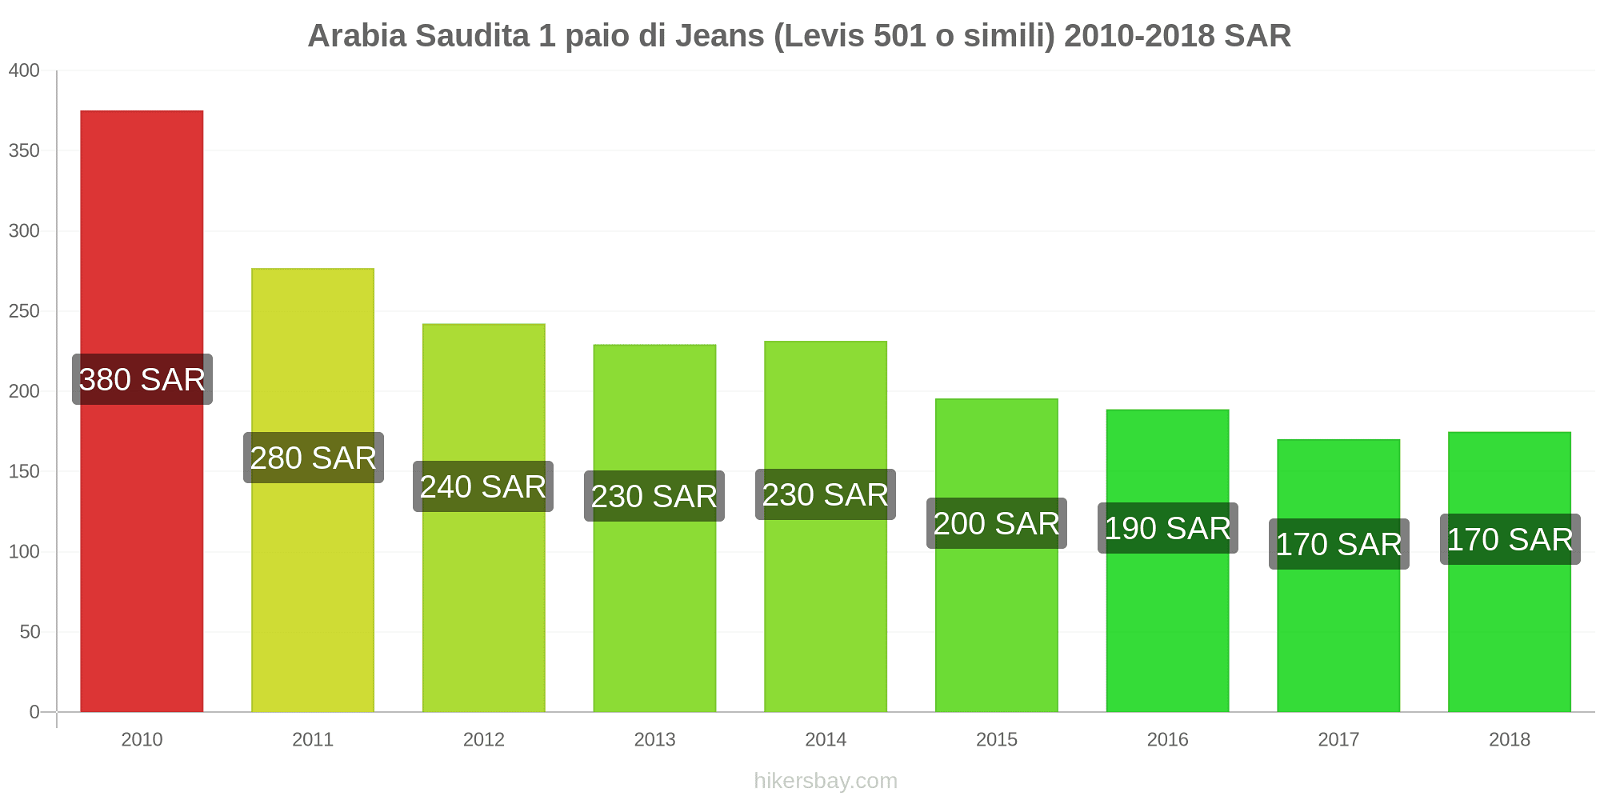 Arabia Saudita cambi di prezzo 1 paio di jeans (Levis 501 o simili) hikersbay.com